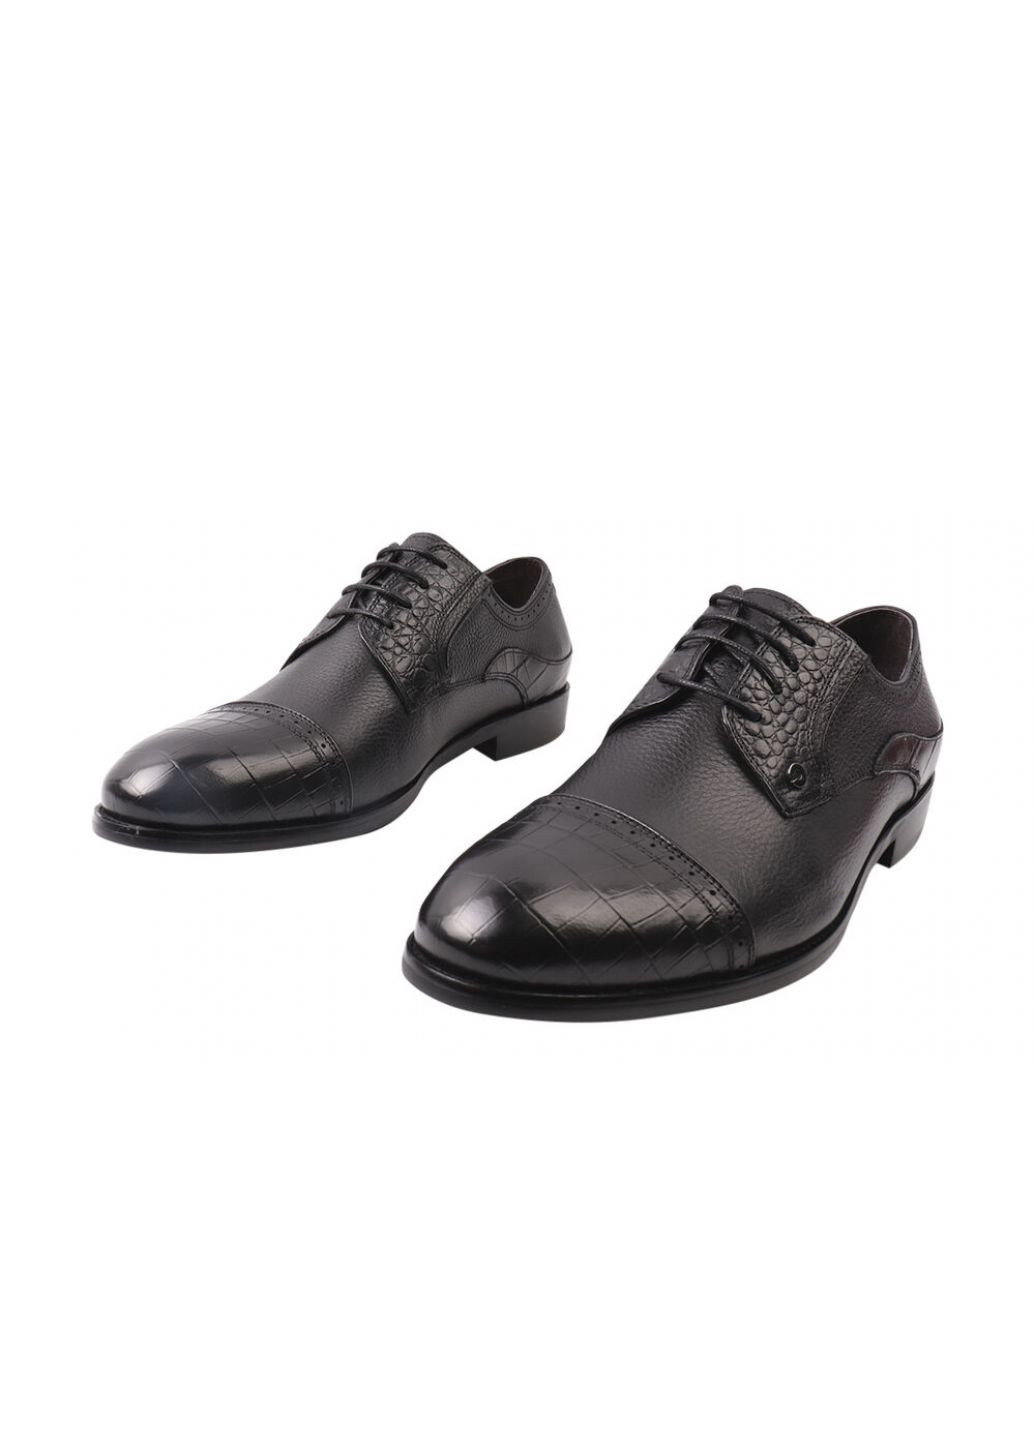 Черные туфли мужские из натуральной кожи, на низком ходу, цвет черный, Anemone